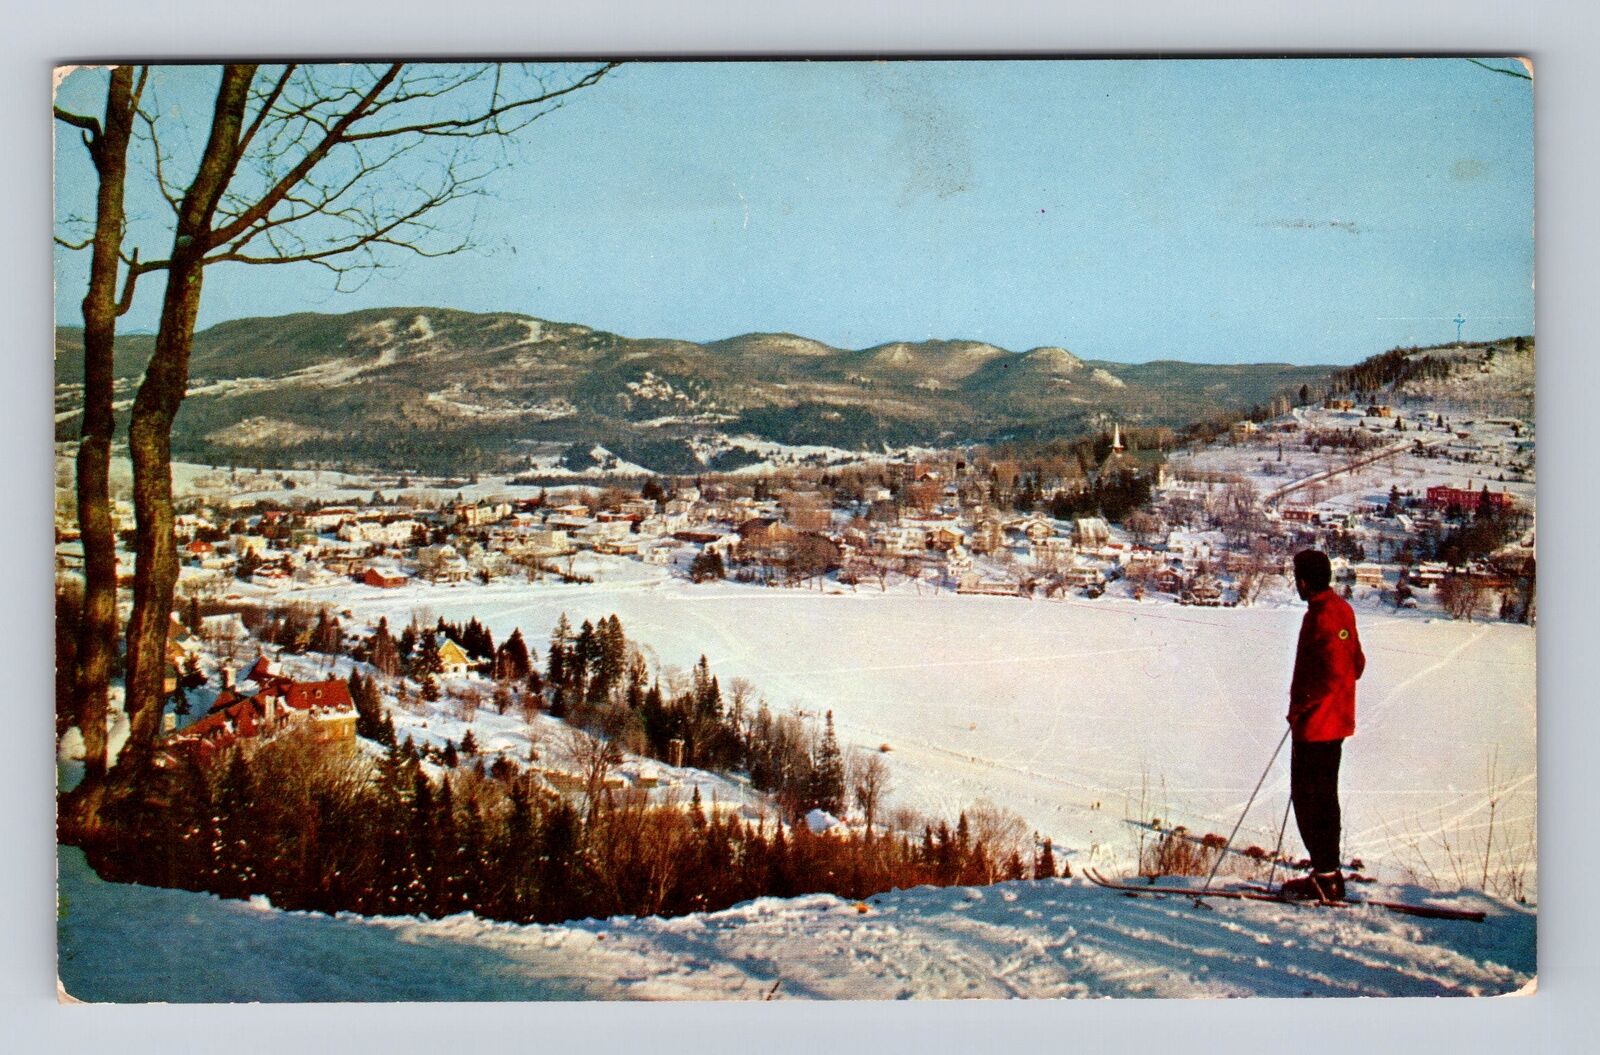 St Adel-en-Haut Quebec-Canada, Laurentians Mountains, Vintage Souvenir Postcard